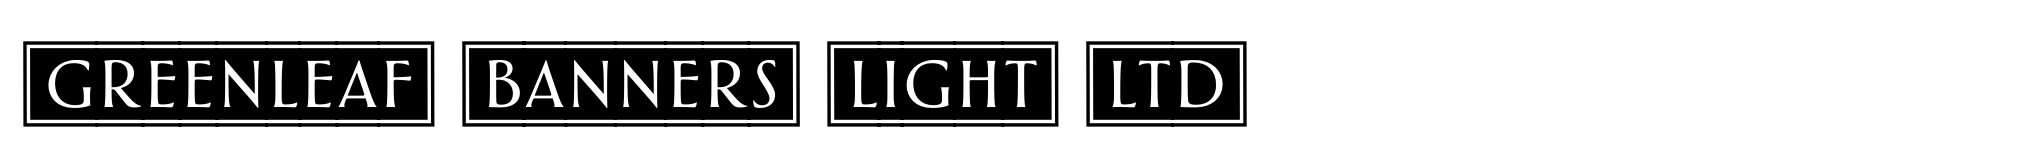 Greenleaf Banners Light Ltd image